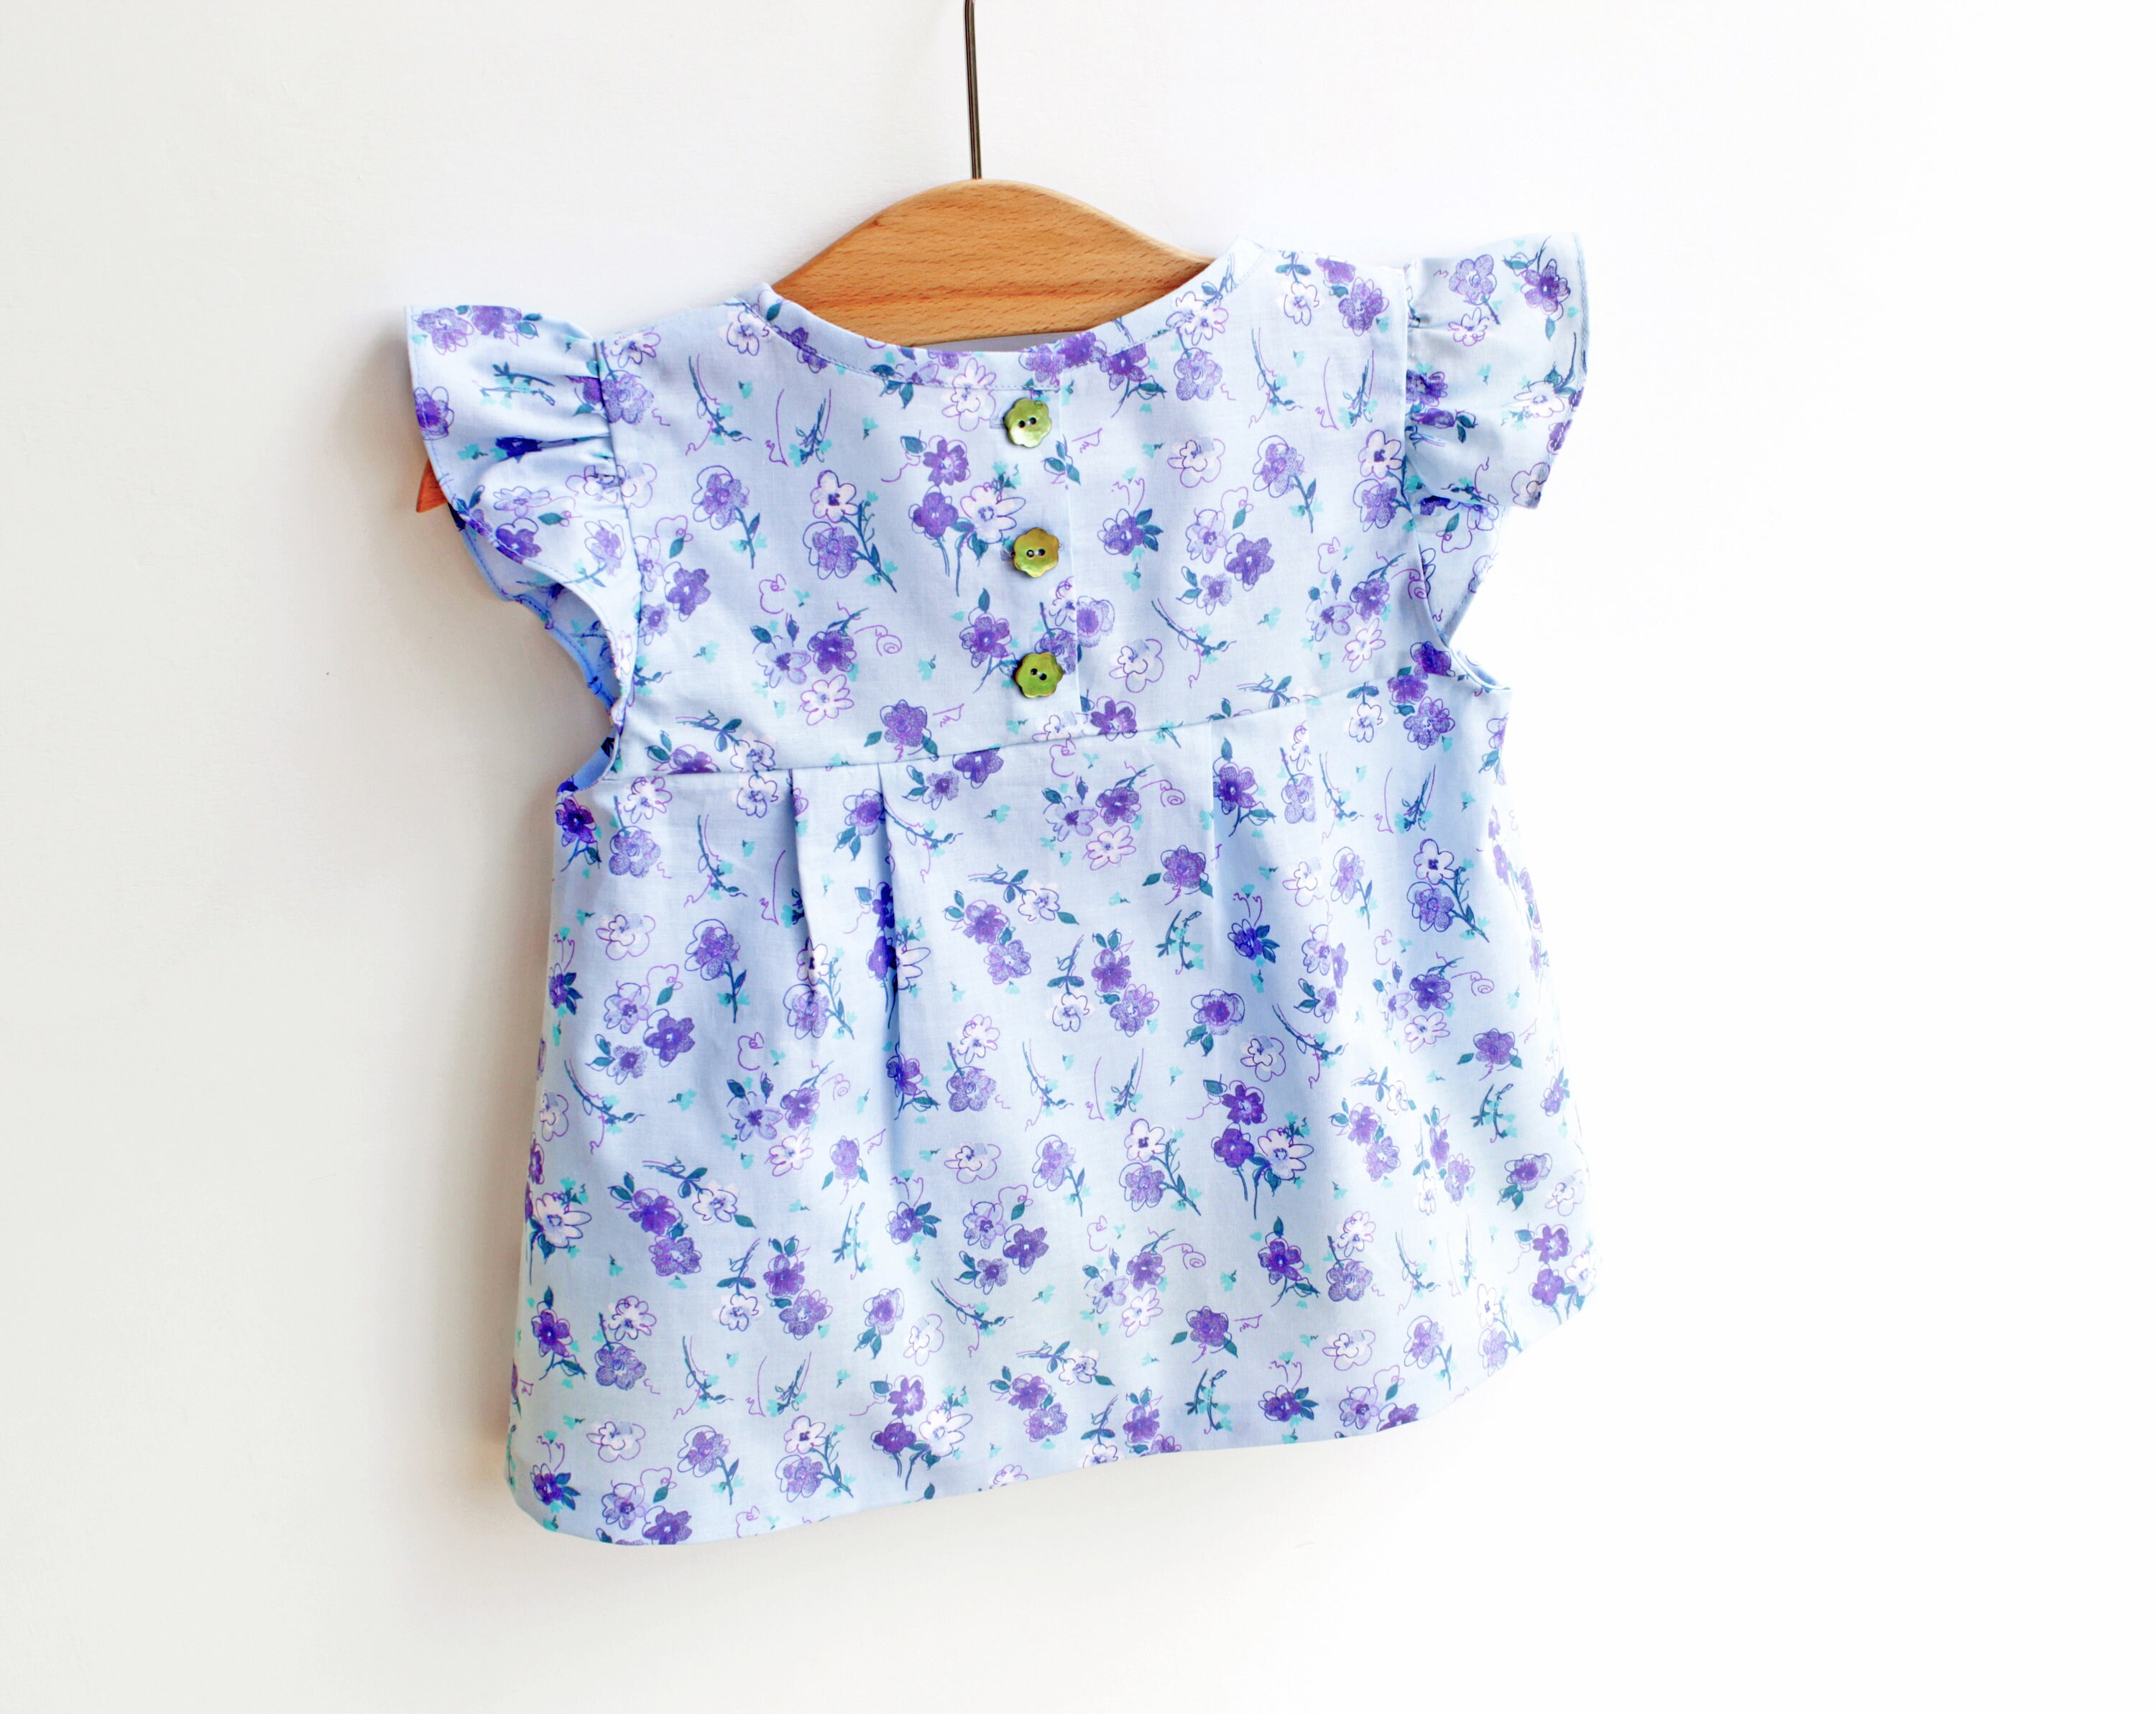 LIBERTY Style Girl Blouse Tunic Top Shirt sewing pattern Pdf | Etsy